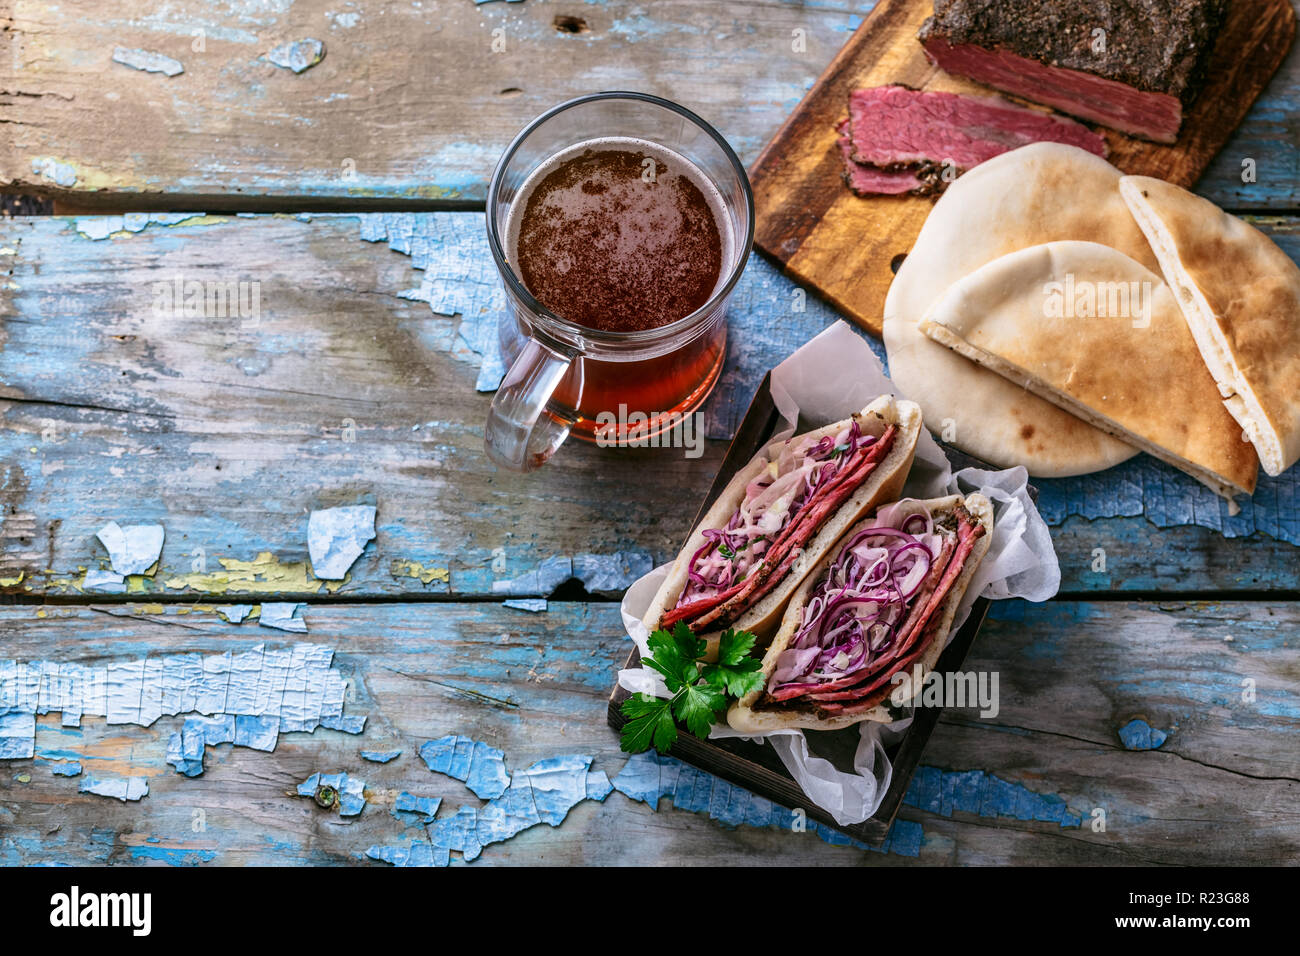 Sandwich au pastrami et coleslaw, style rustique, copiez l'espace. Banque D'Images